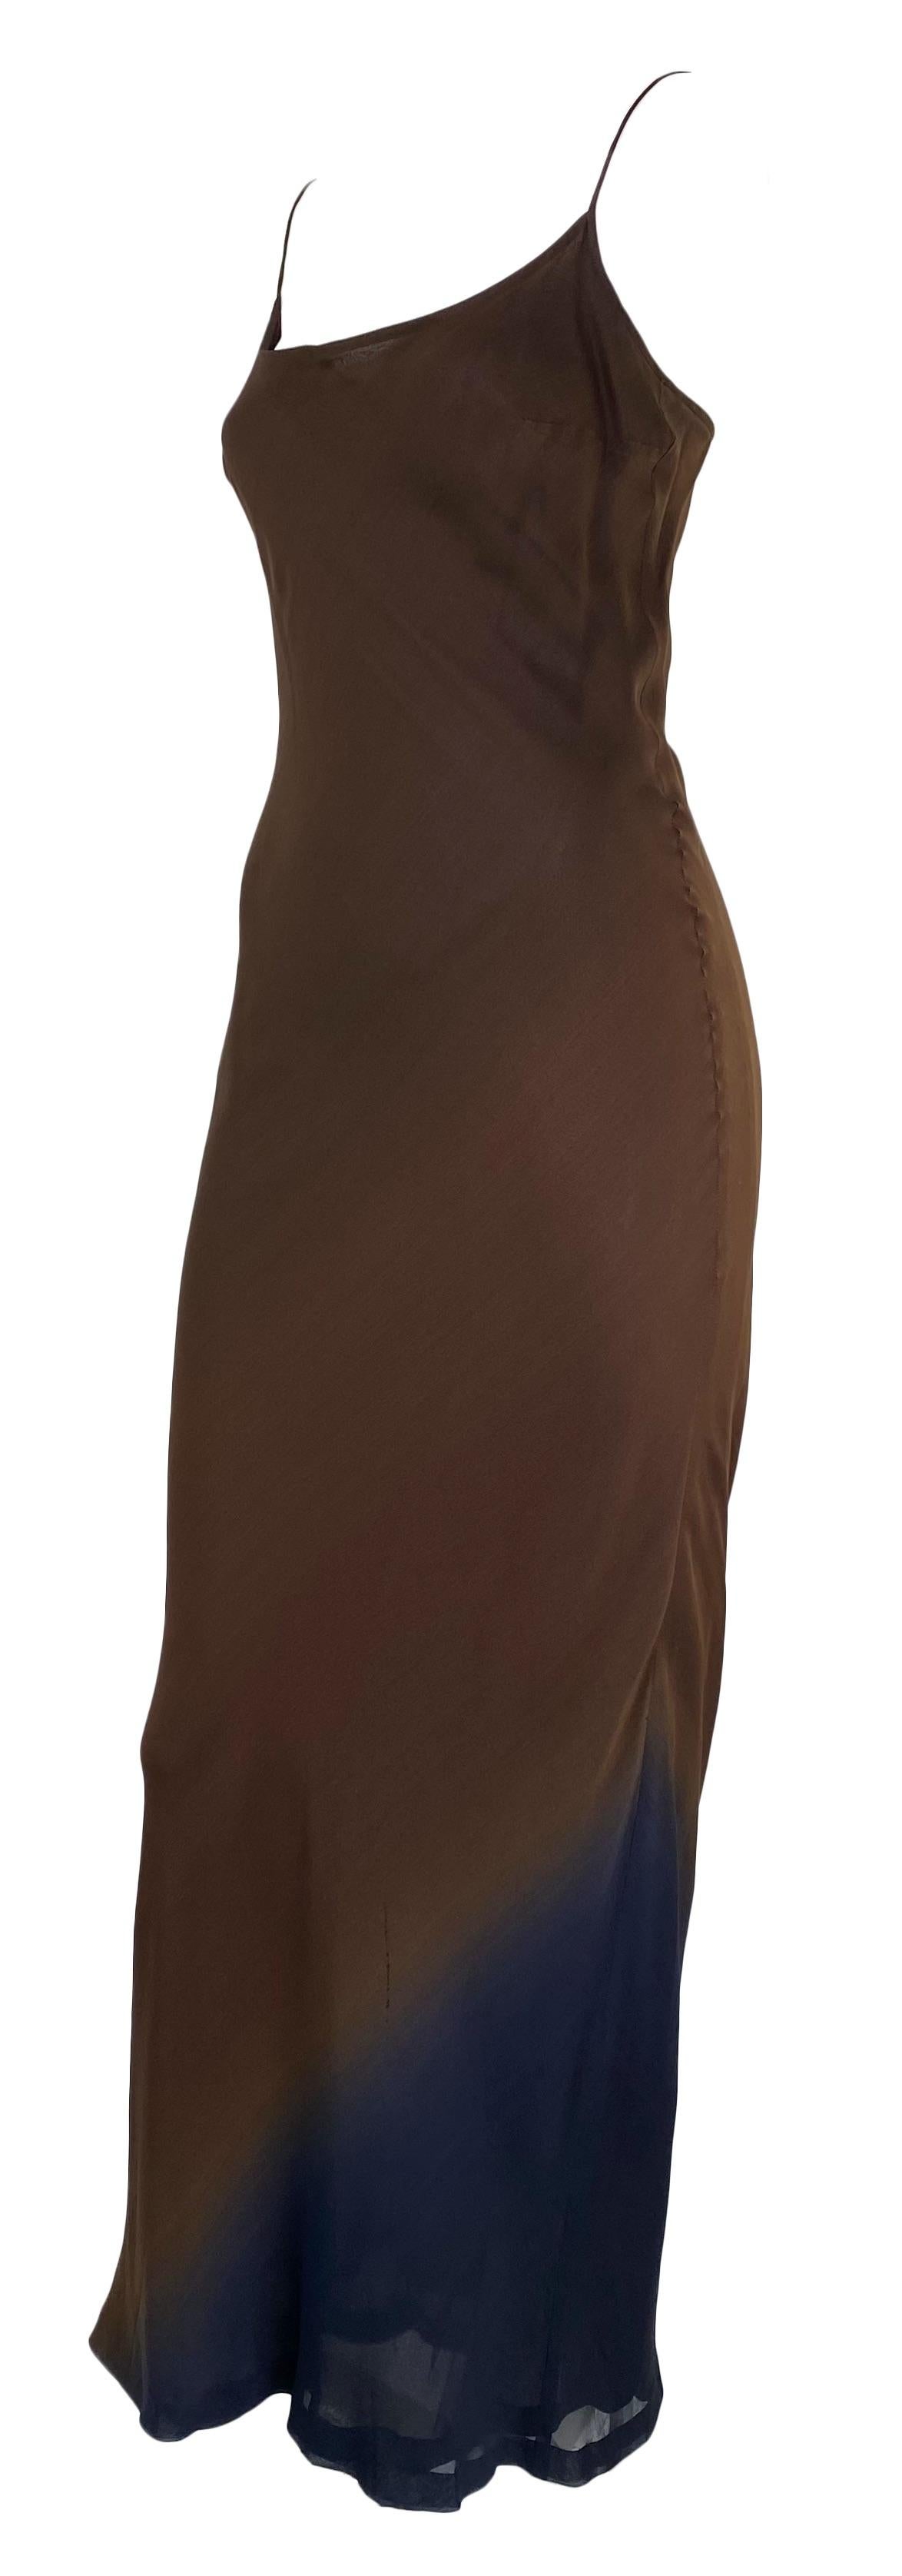 Wir präsentieren ein Ombré-Kleid aus brauner und blauer Seide, entworfen von Tom Ford für die Gucci Frühjahr/Sommer-Kollektion 1997. Dieses Stück repräsentiert die schlichte Eleganz und Sinnlichkeit, die Ford als Kreativdirektor in das Haus Gucci